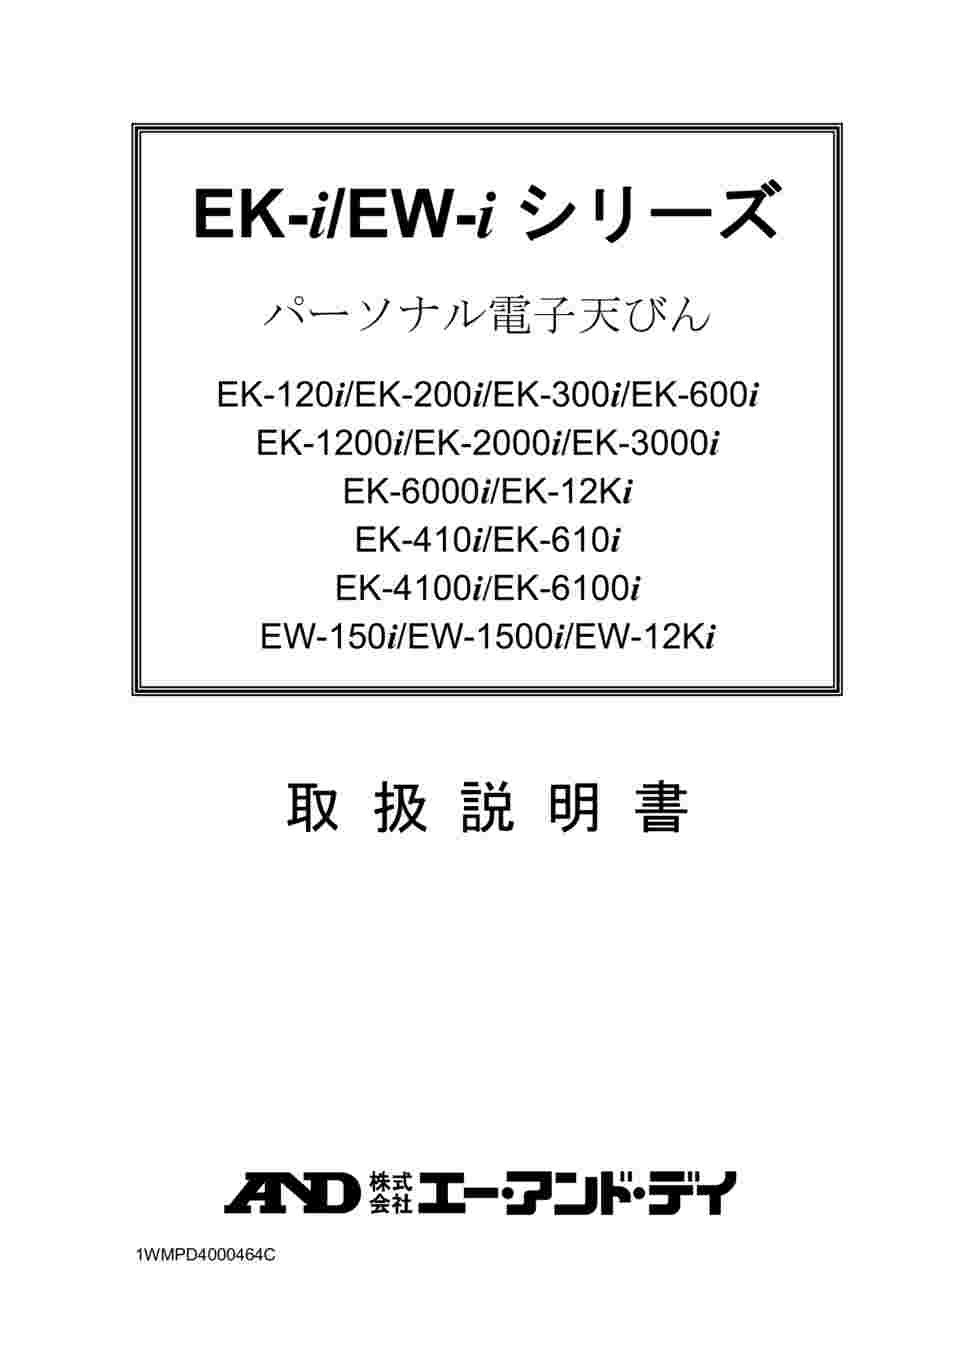 1-4465-04 コンパクト電子天びん EK-iシリーズ ひょう量:1200g 最小 